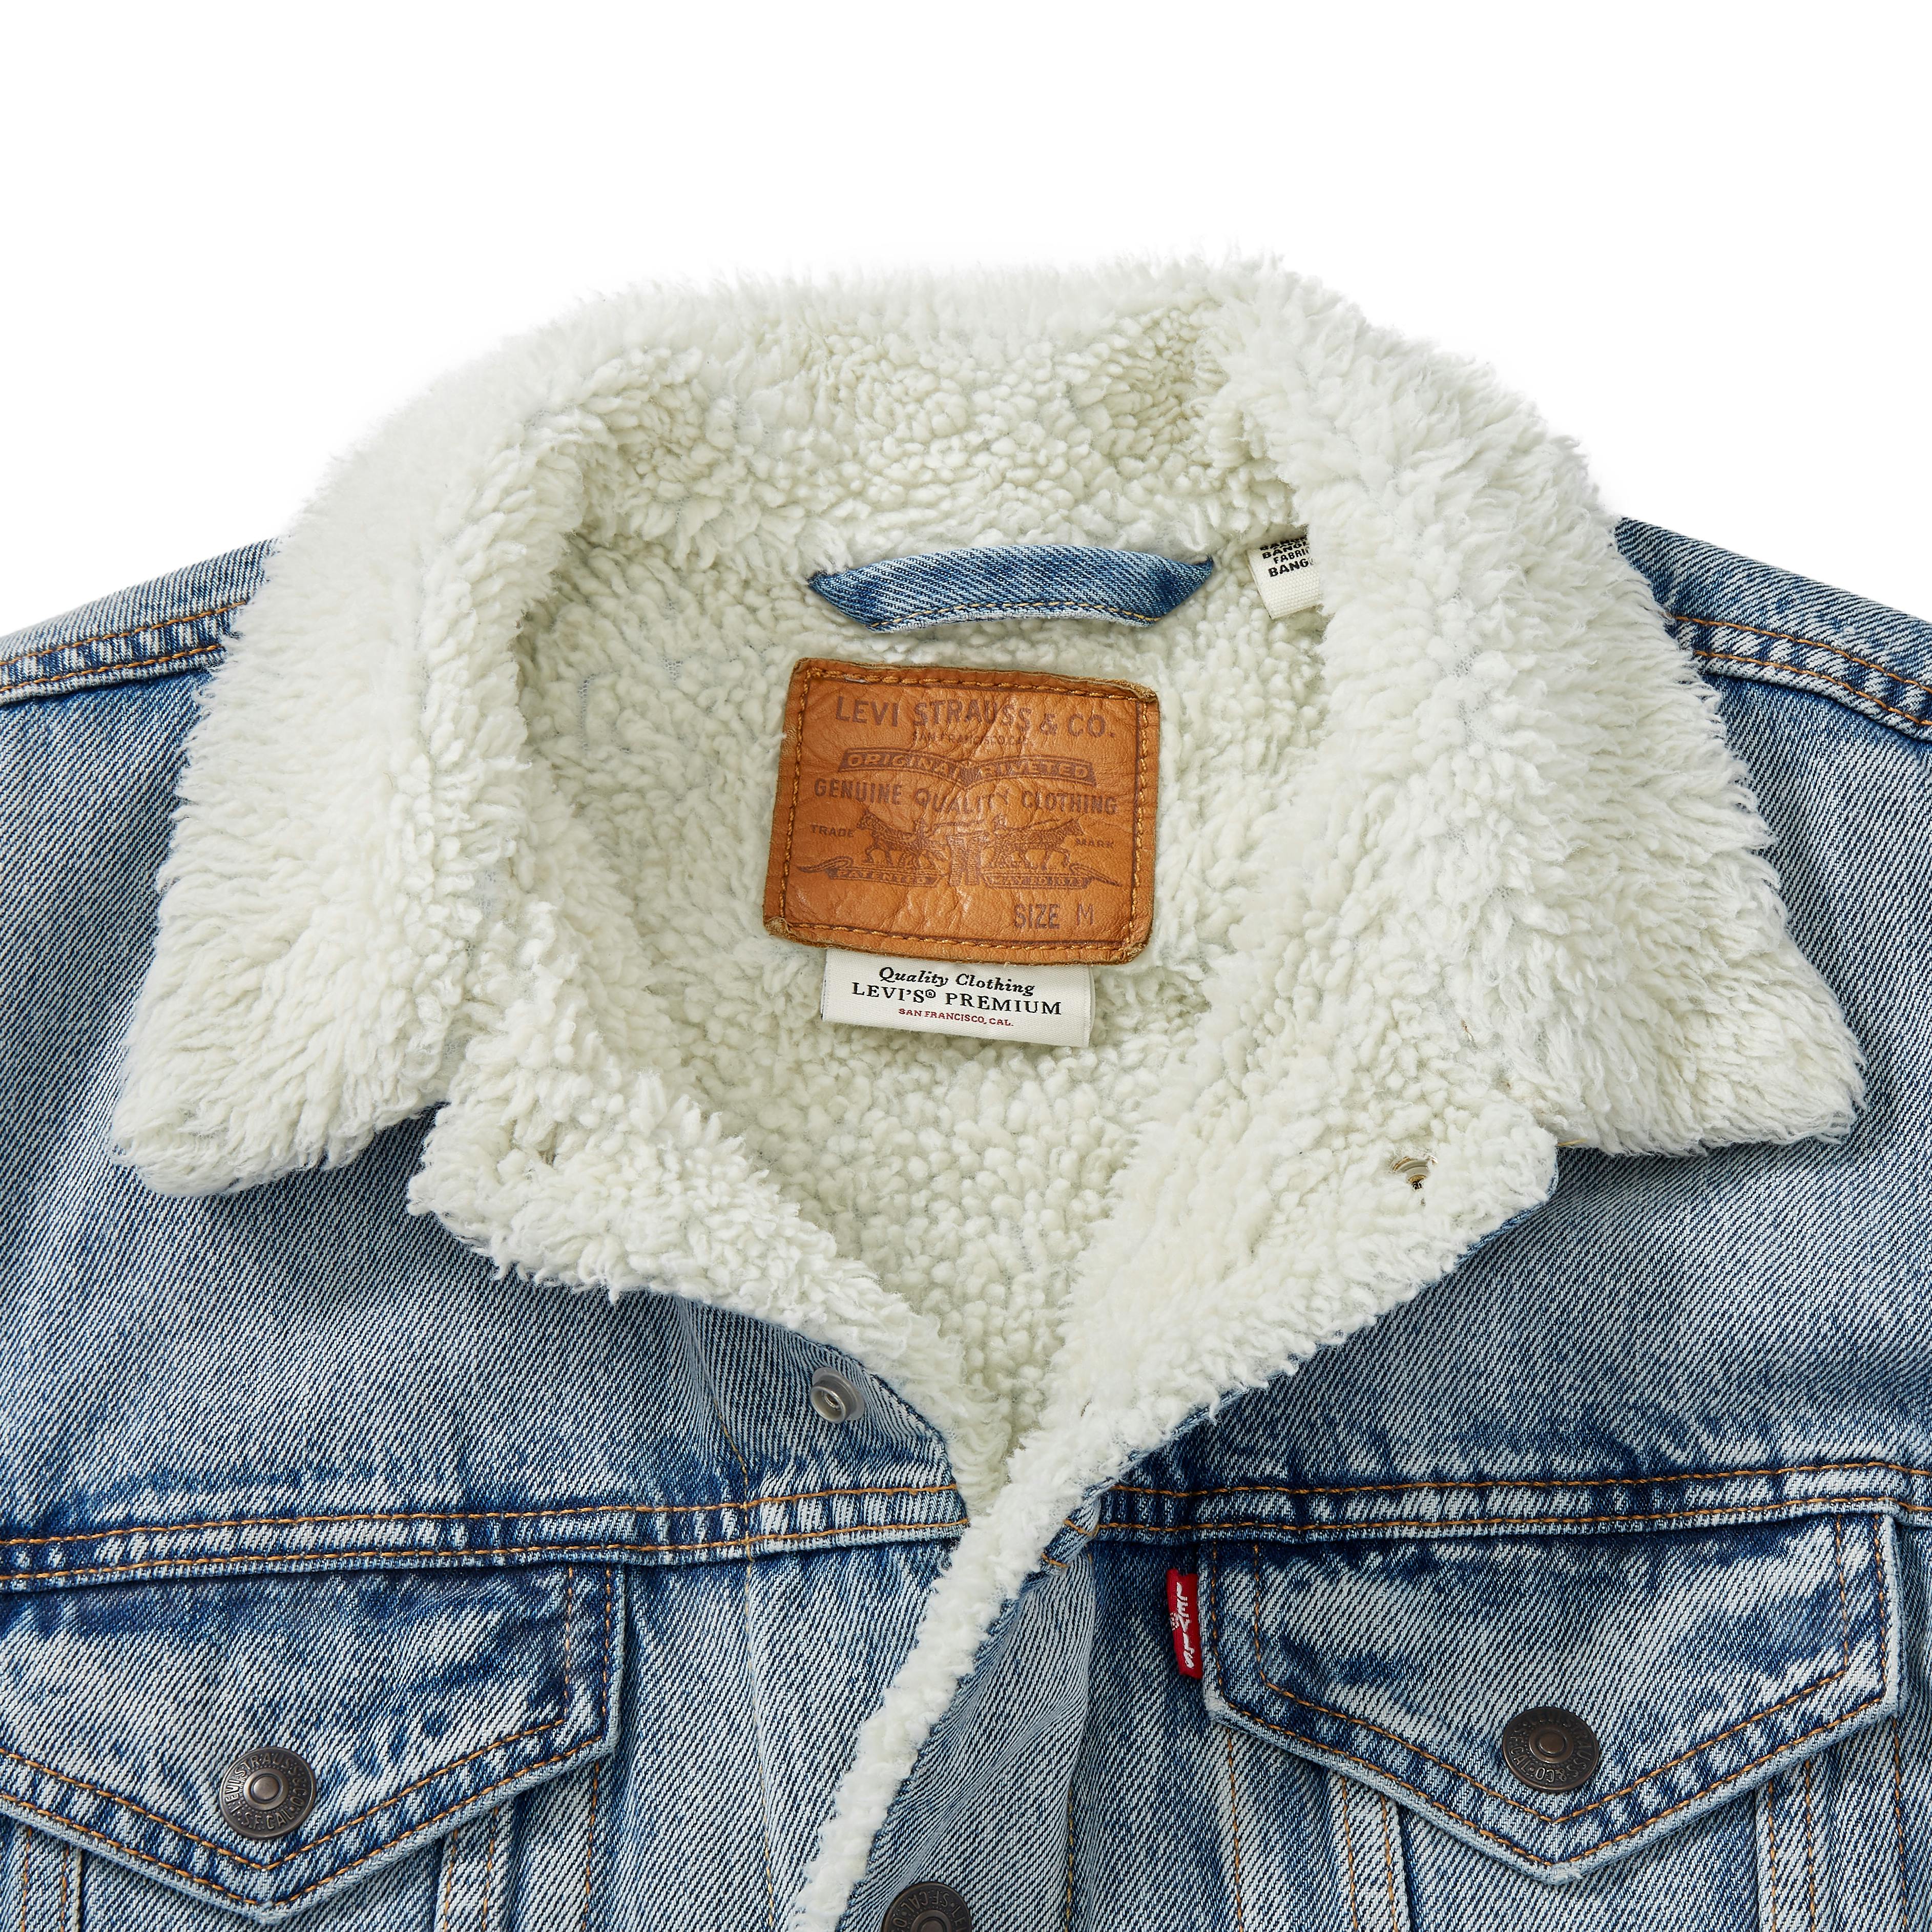 Levis Sherpa Fleece Lined Denim Trucker Jacket, $128